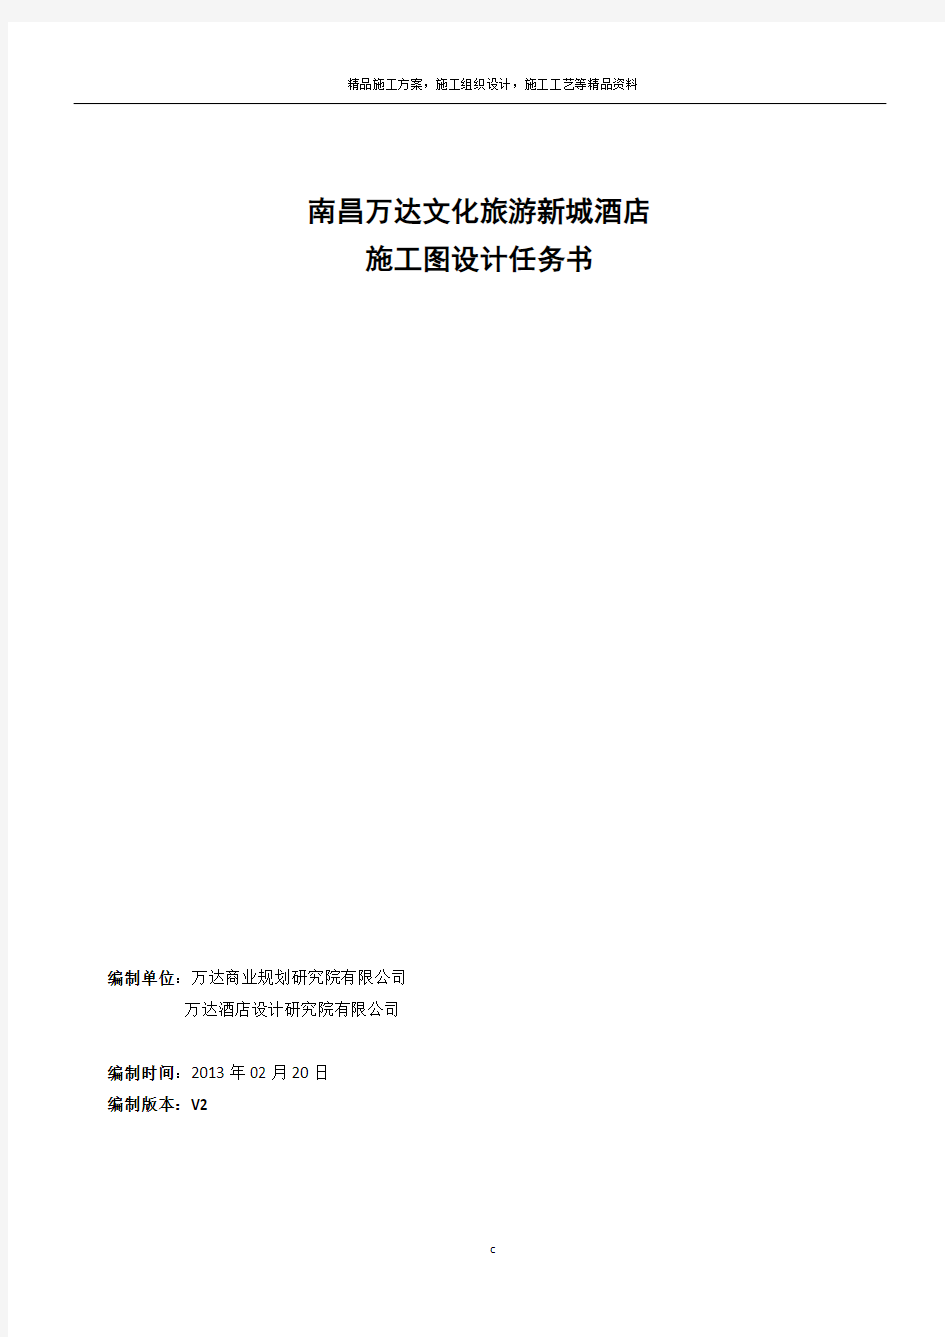 南昌万达文化旅游新城酒店施工图设计任务书2.20